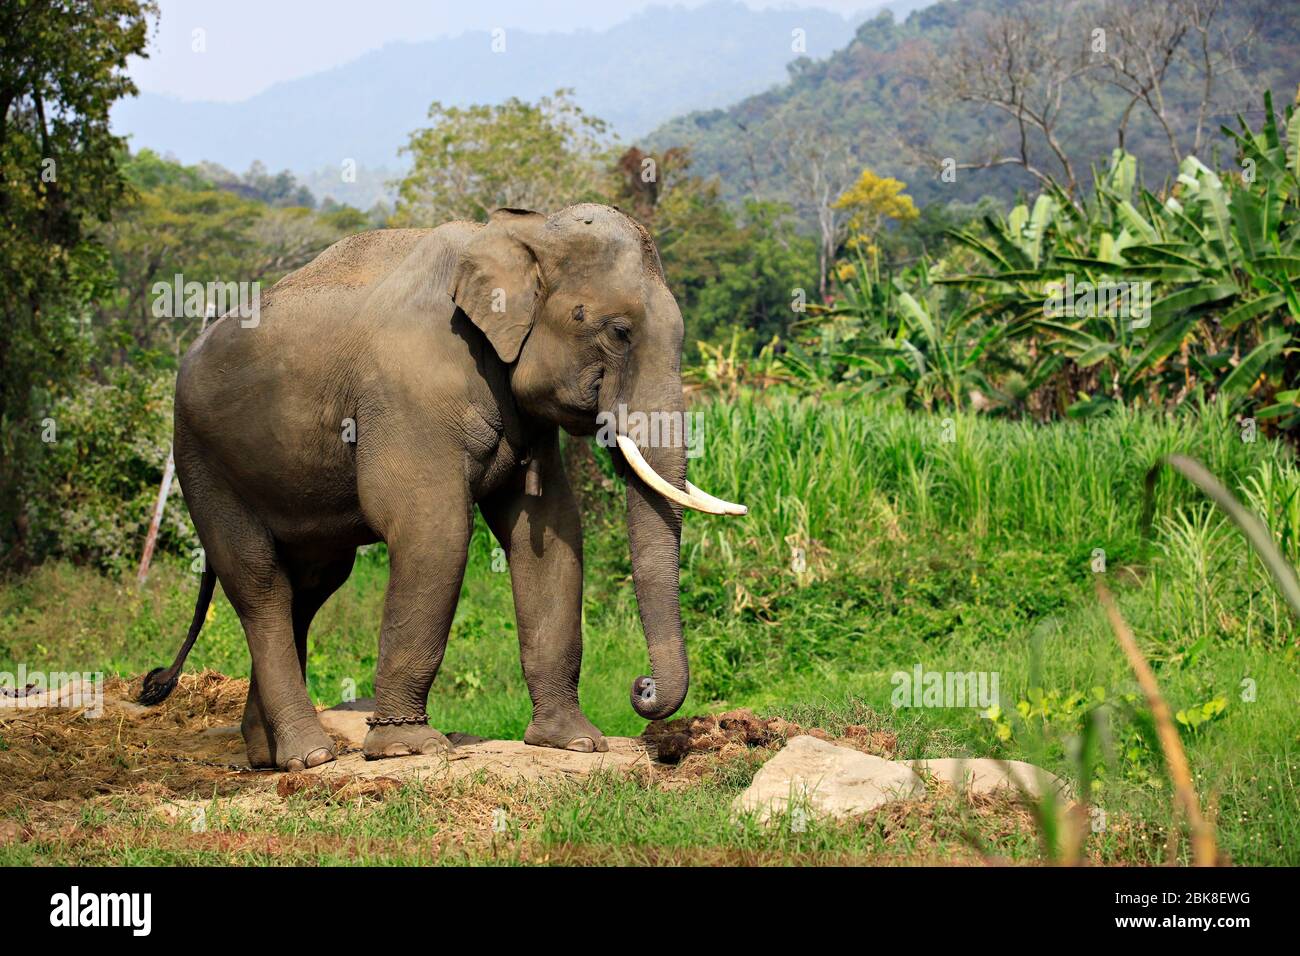 Wild elephant enjoying life at Maesa Elephant Camp's, Chiangmai, Thailand Stock Photo